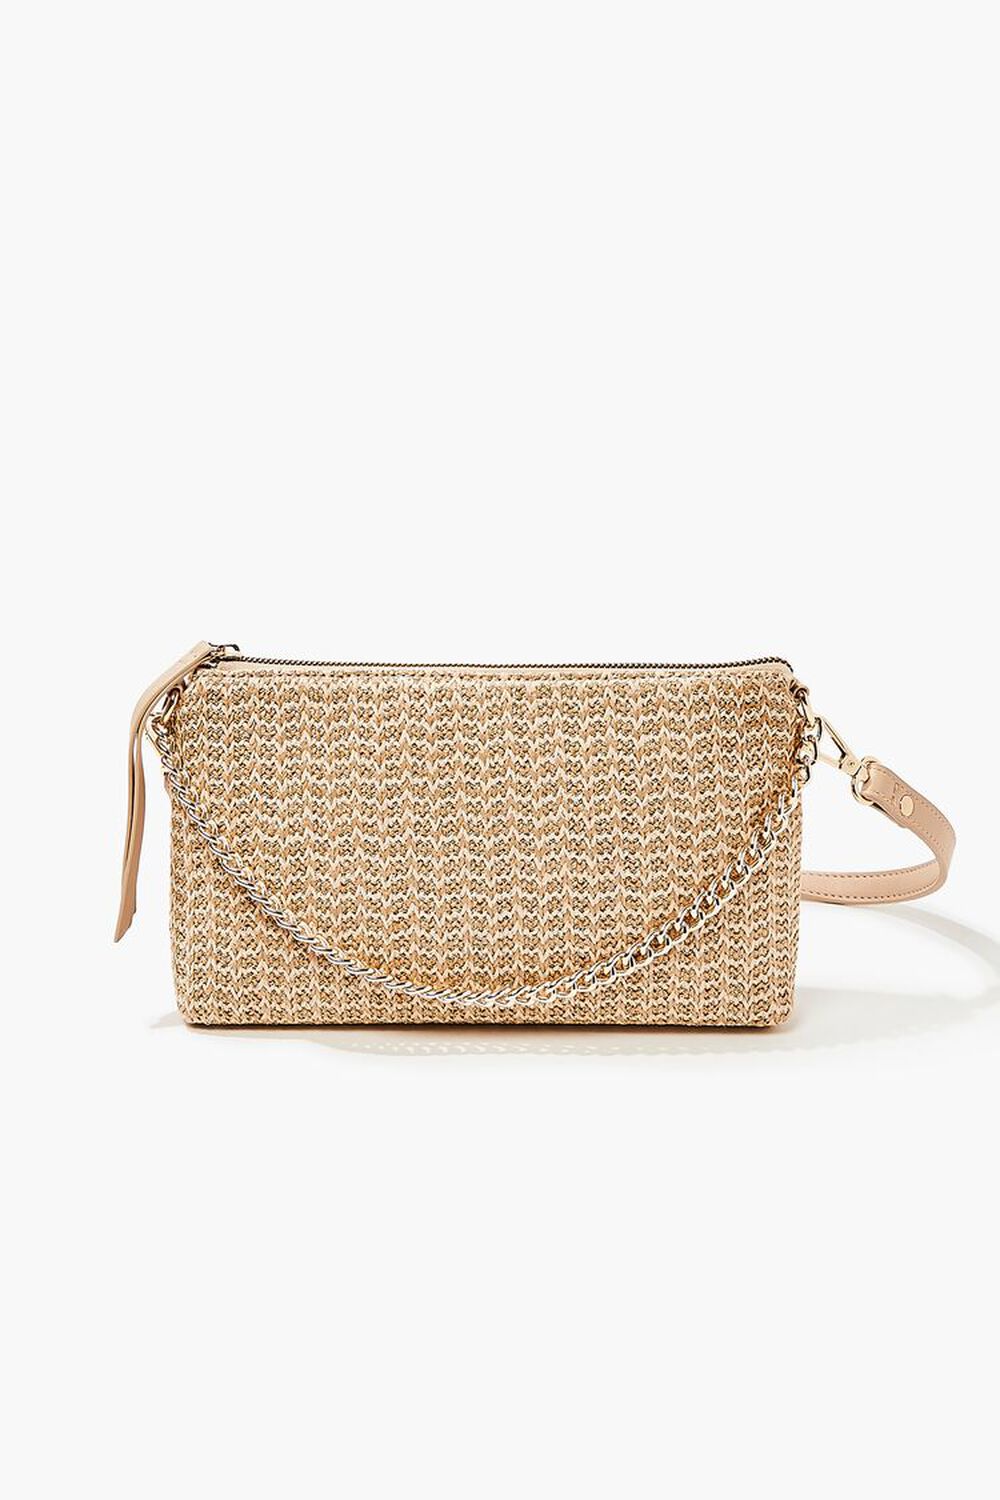 NATURAL Basketwoven Chain Shoulder Bag, image 1